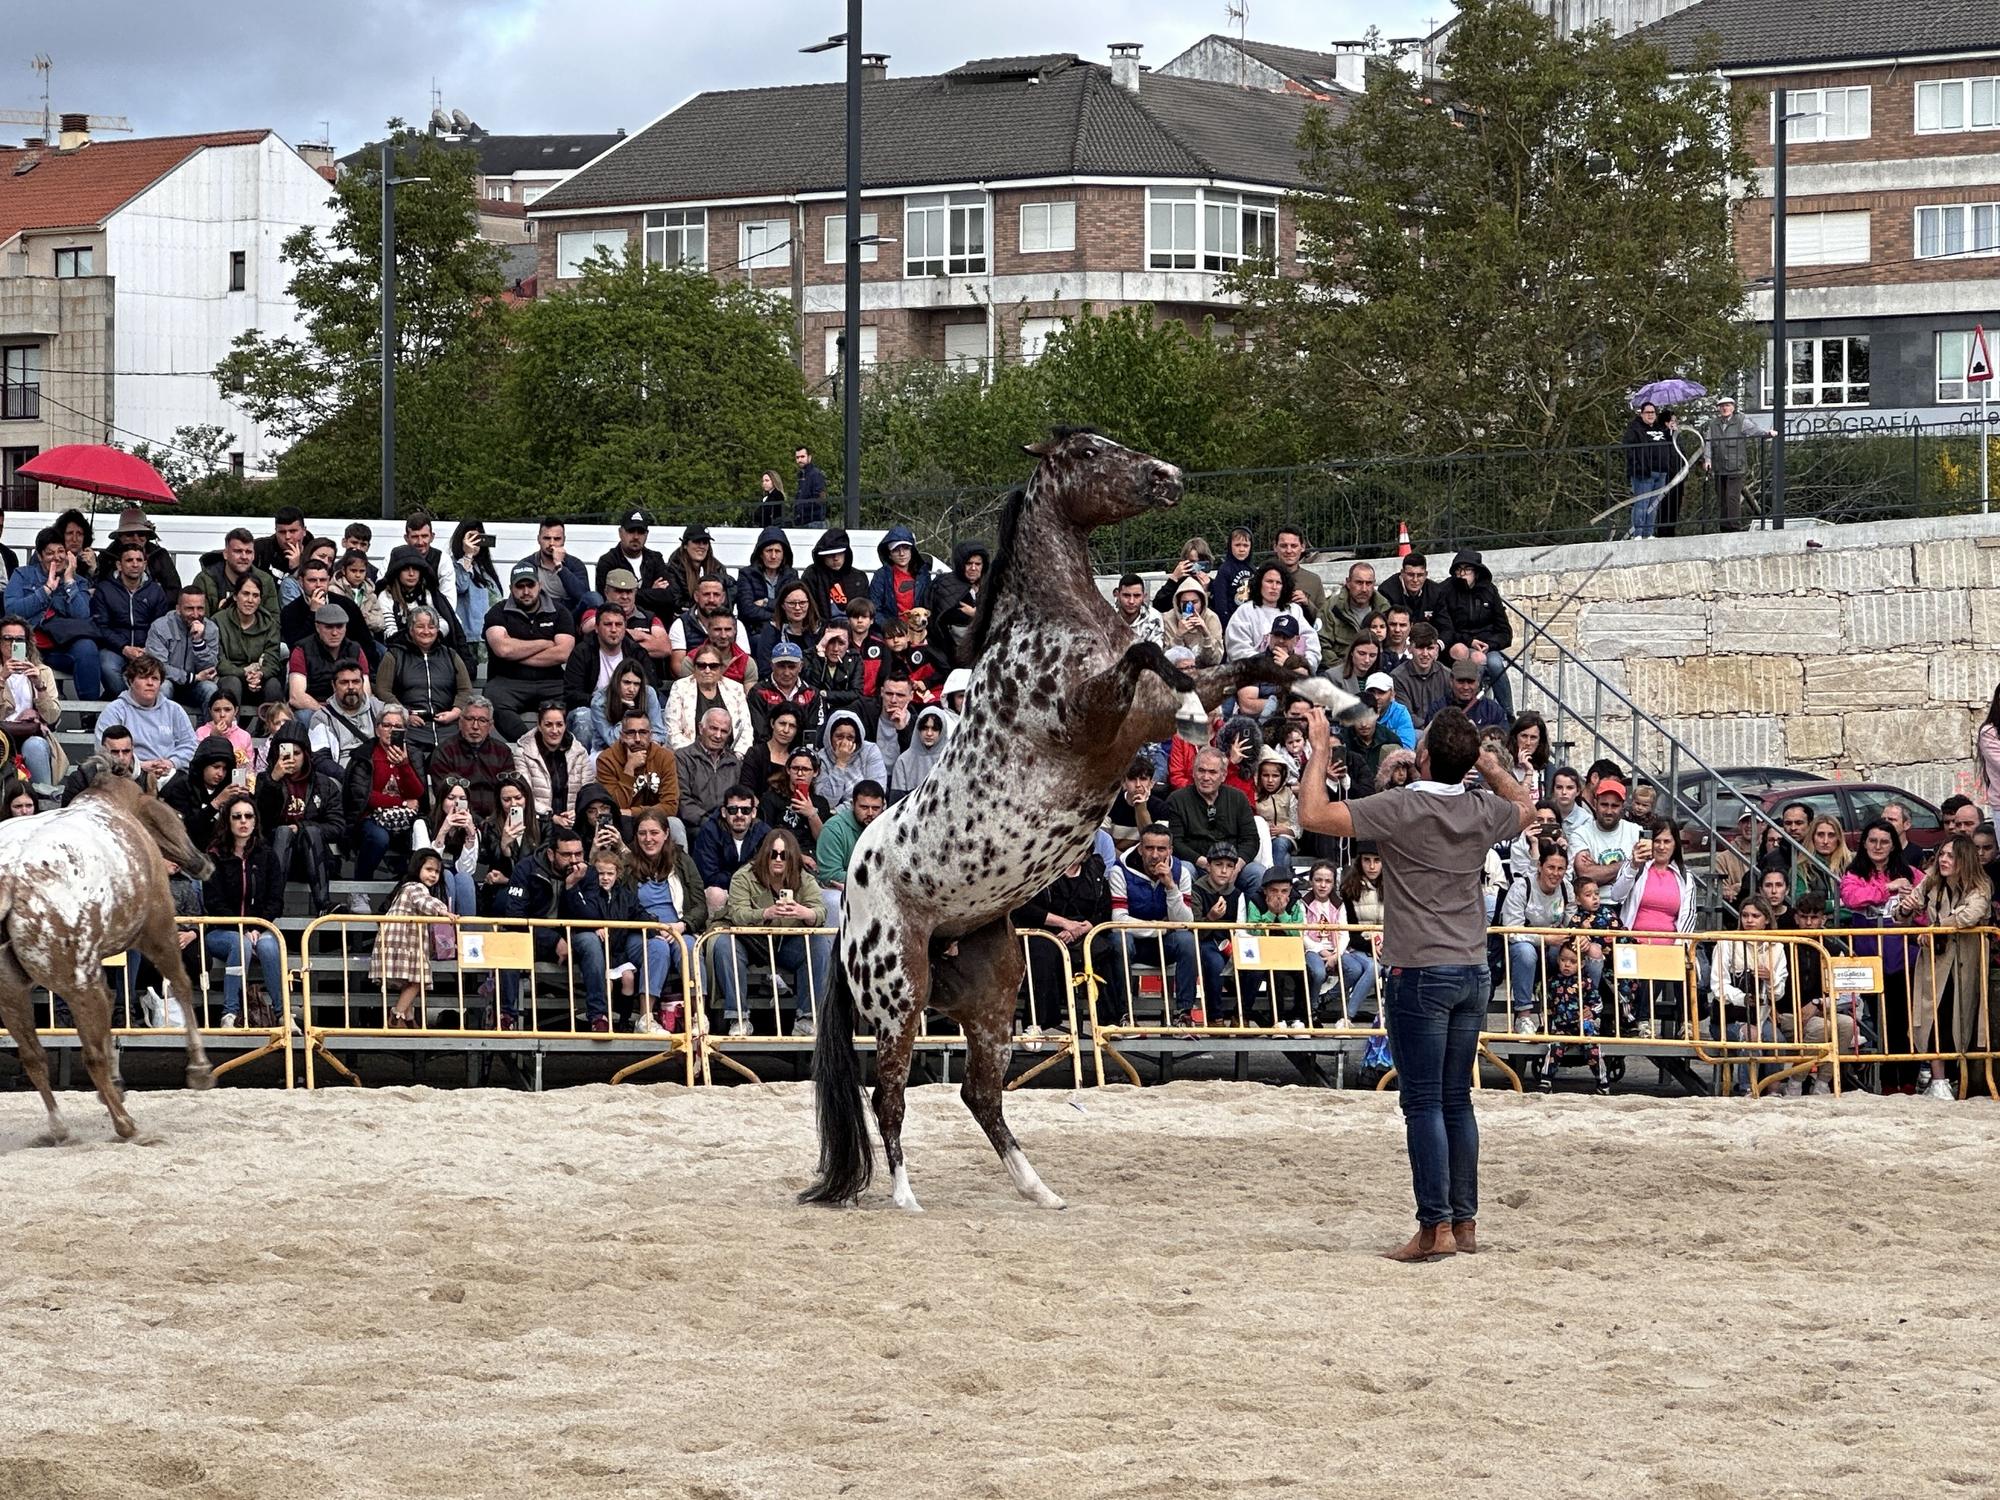 Danza sobre la arena: el espectáculo equino de Santi Serra hipnotiza Lalín